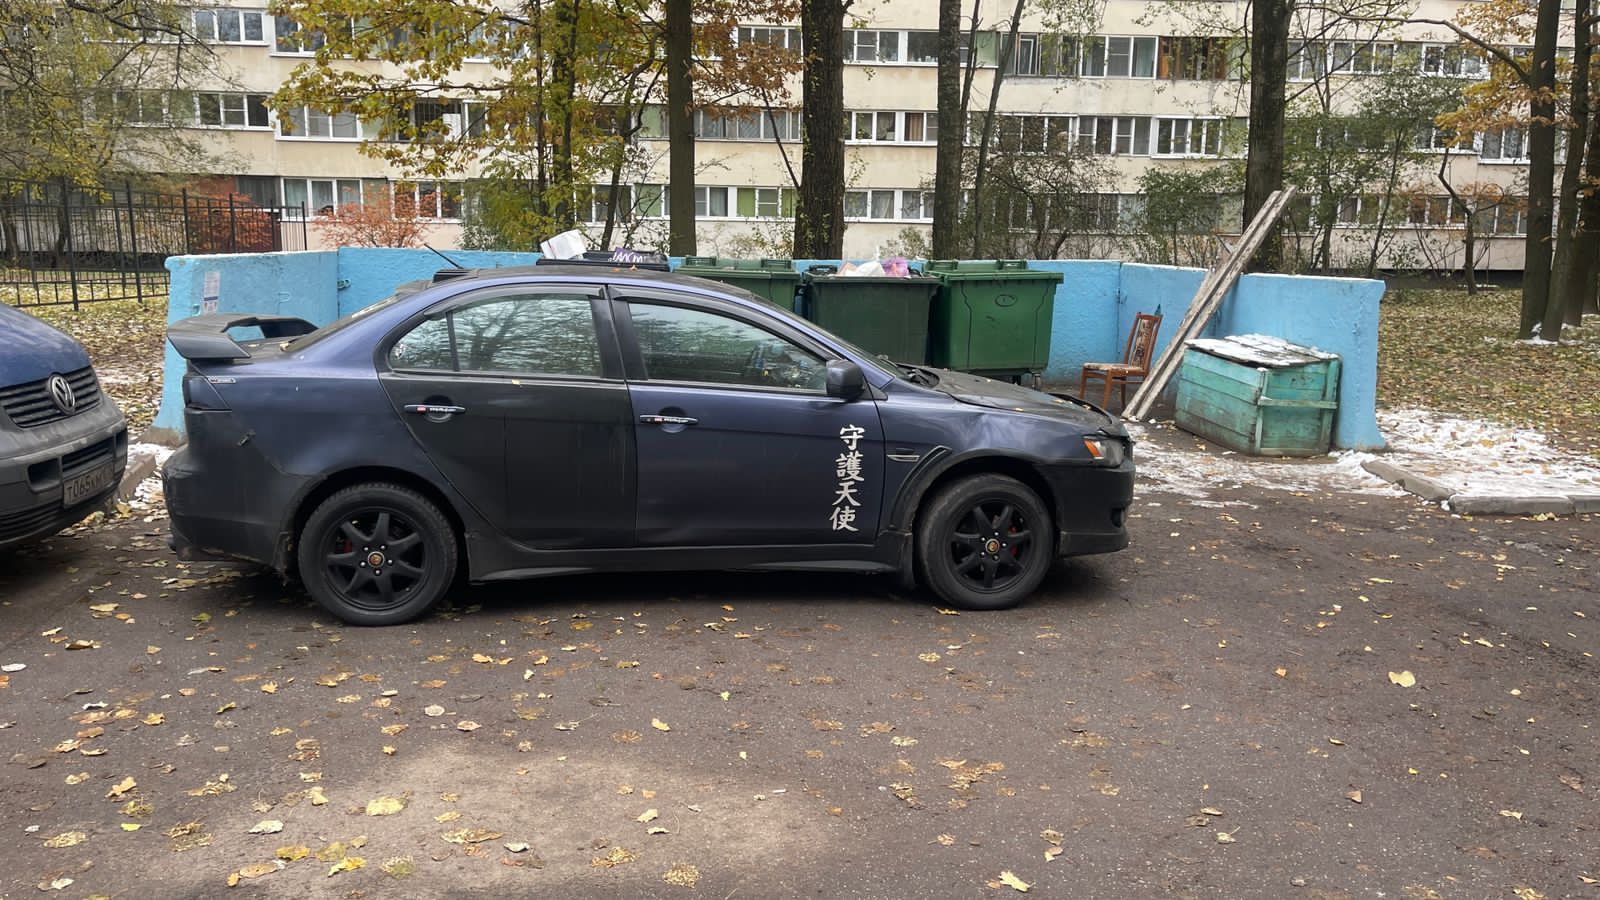 МО МО Северный против незаконной парковки 